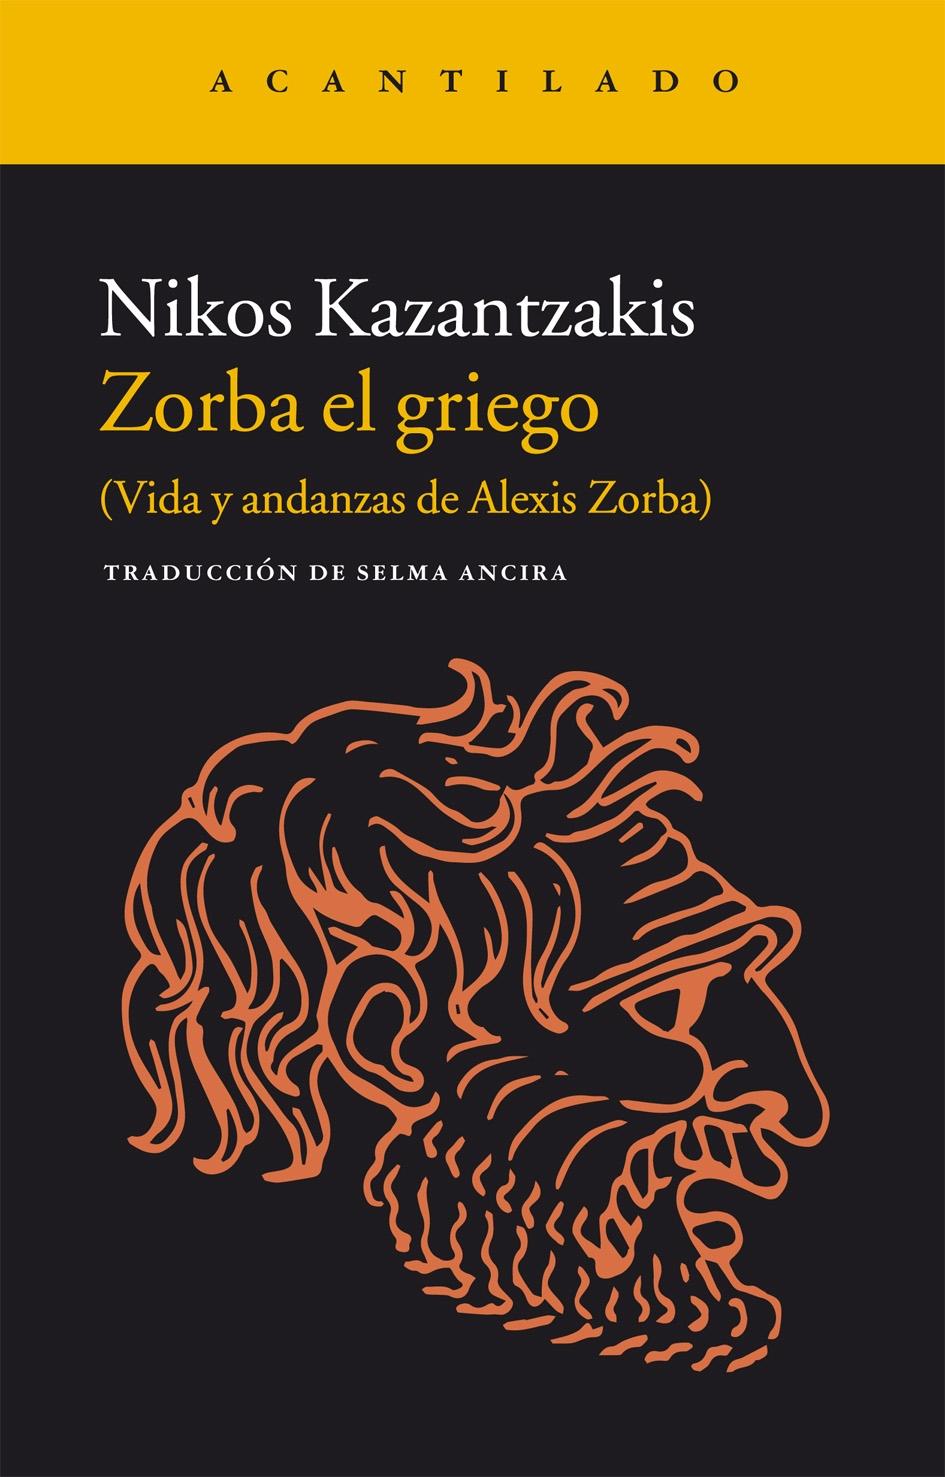 Zorba el griego "Vida y andanzas de Alexis Zorba"